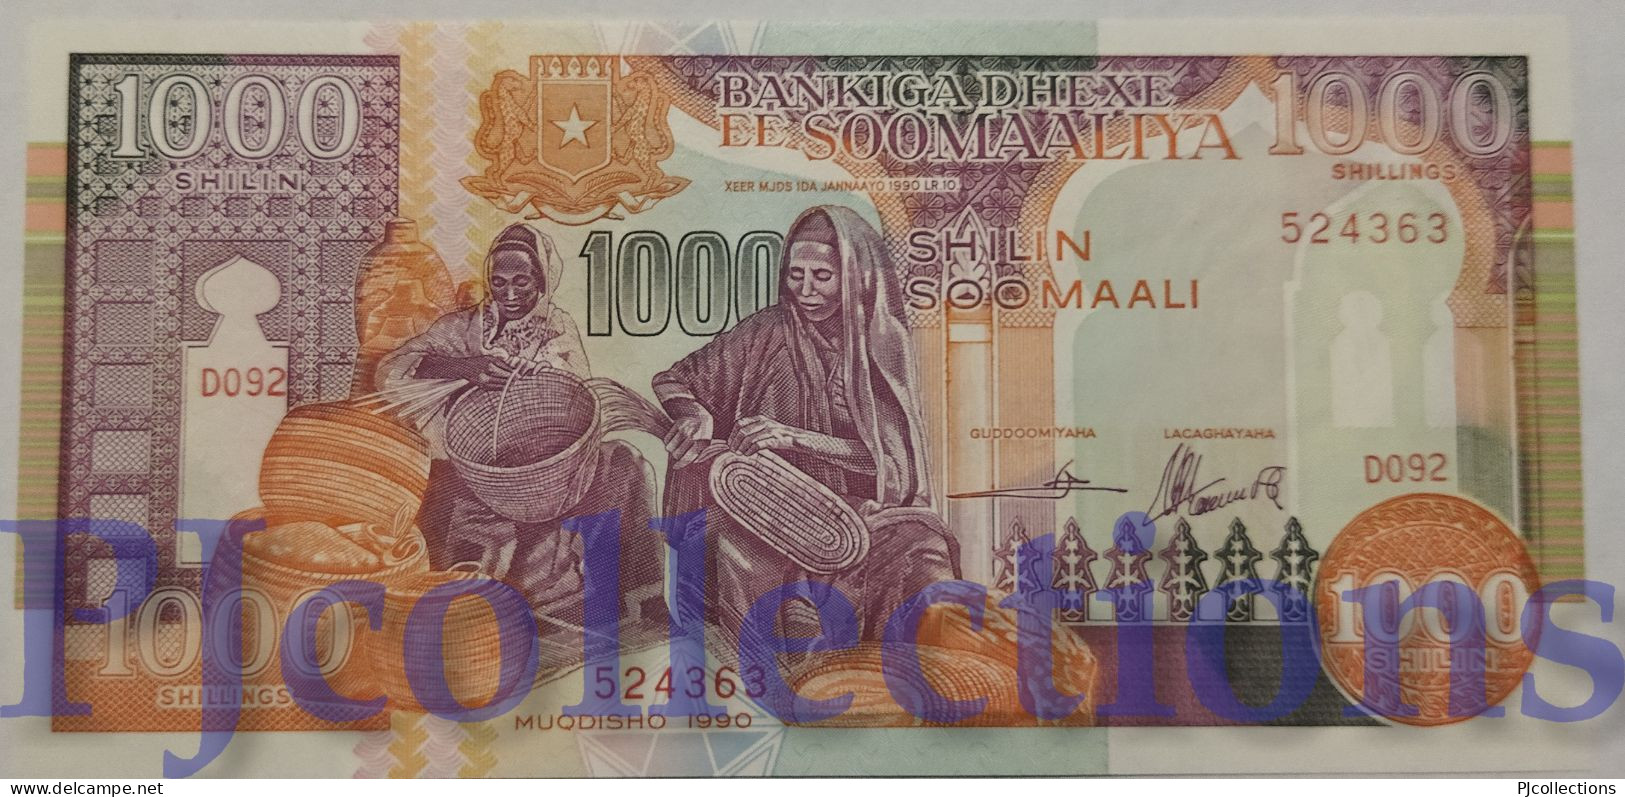 SOMALIA 1000 SHILLINGS 1990 PICK 37a UNC - Somalie